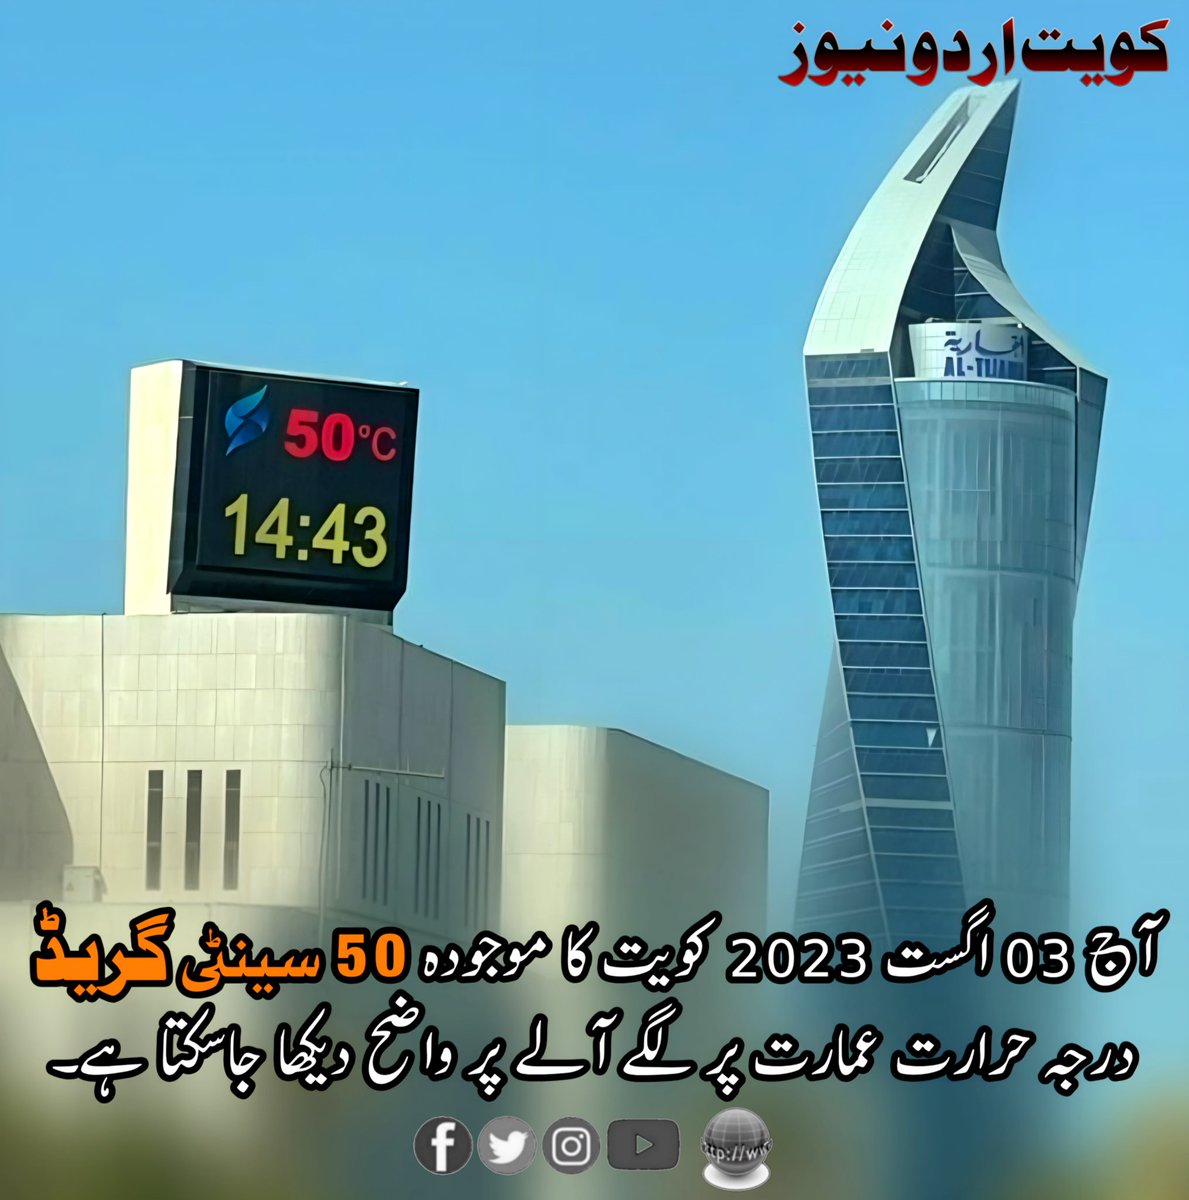 #kuwait #KuwaitUrdu #kuwaiturdunews #Kuwaitweather #climate #summerseason2023 #heatwave #hotweather #temperature